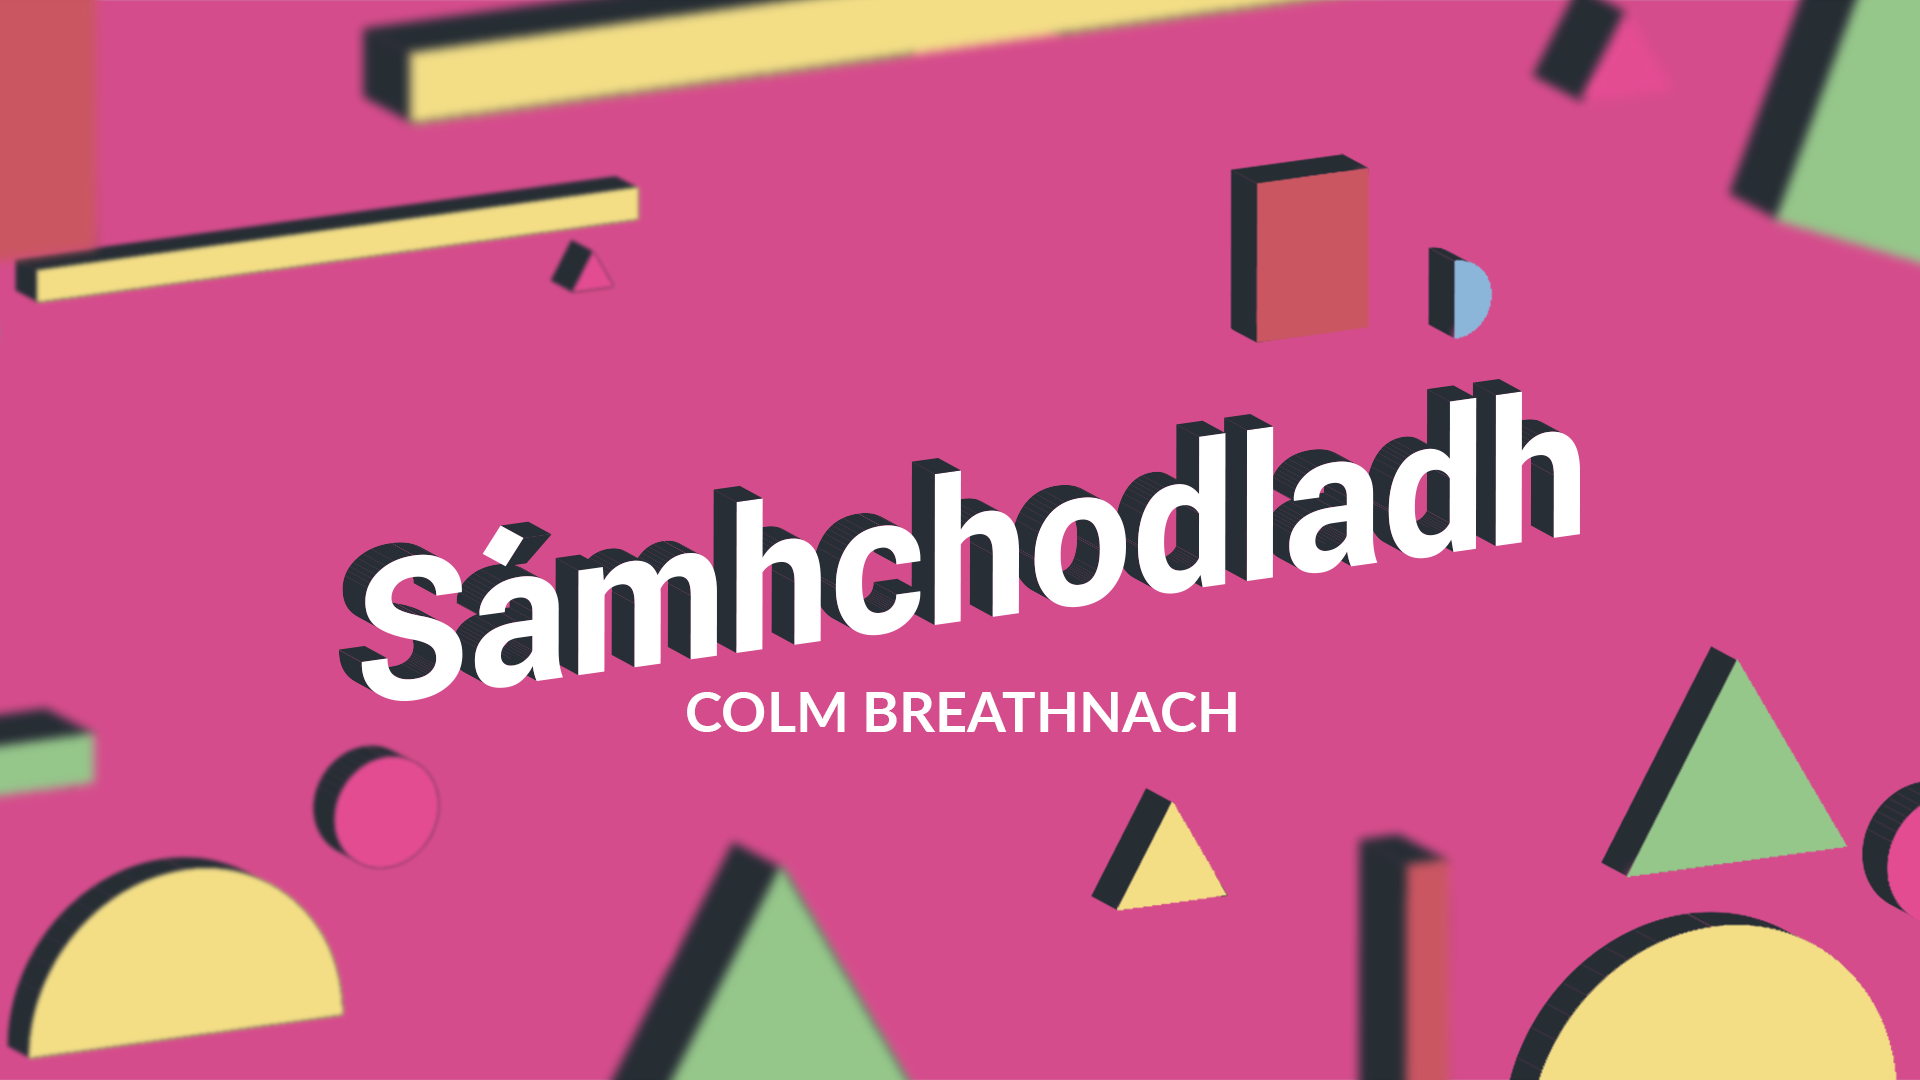 FILÍOCHT: Sámhchodladh le Colm Breathnach